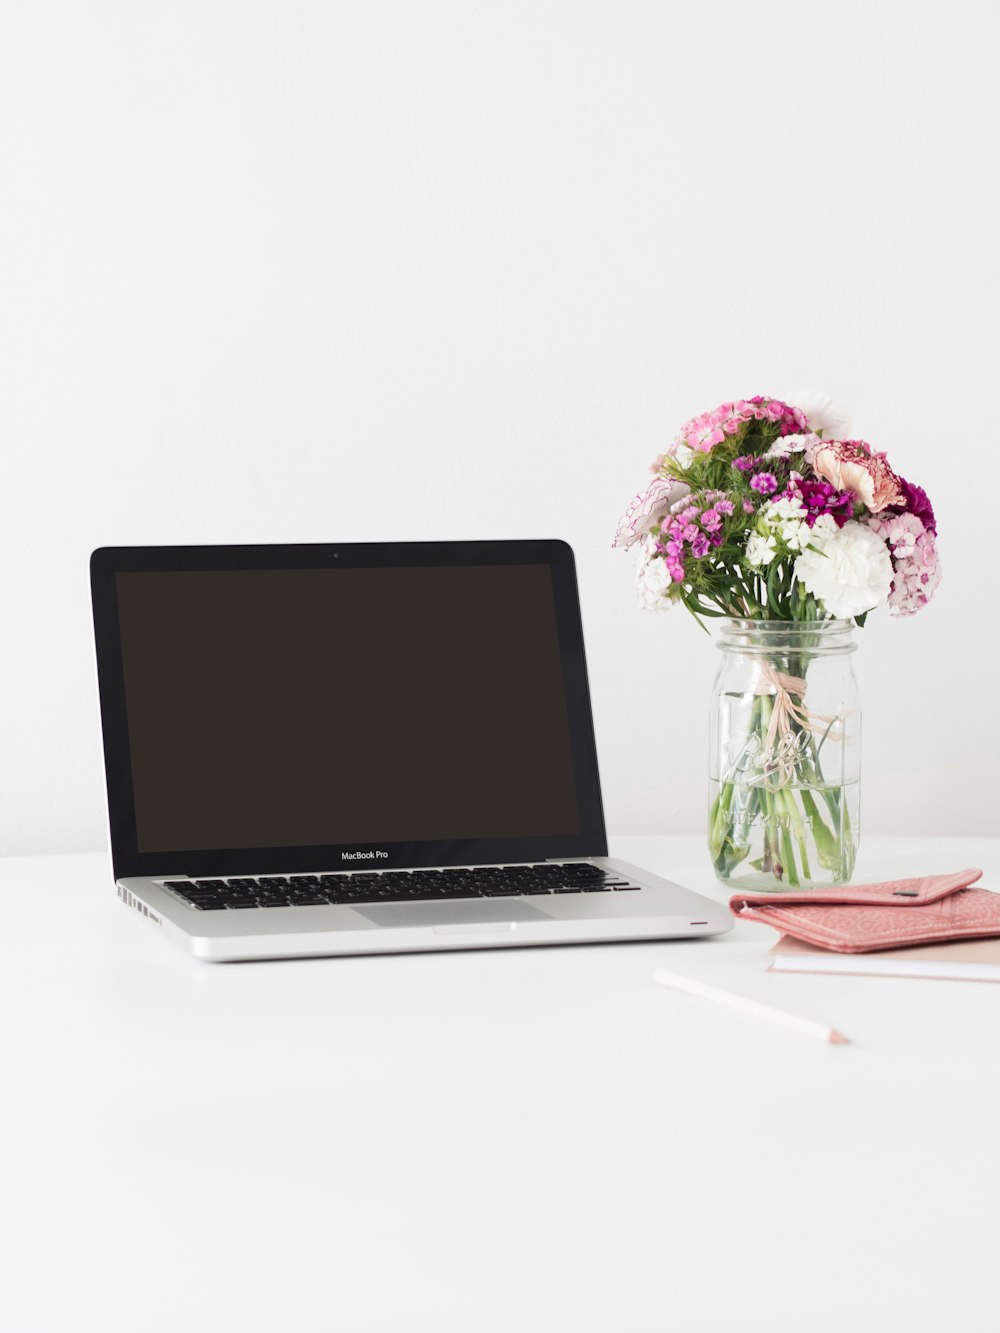 MacBook Pro junto a flores rosas y blancas en un jarrón de vidrio transparente